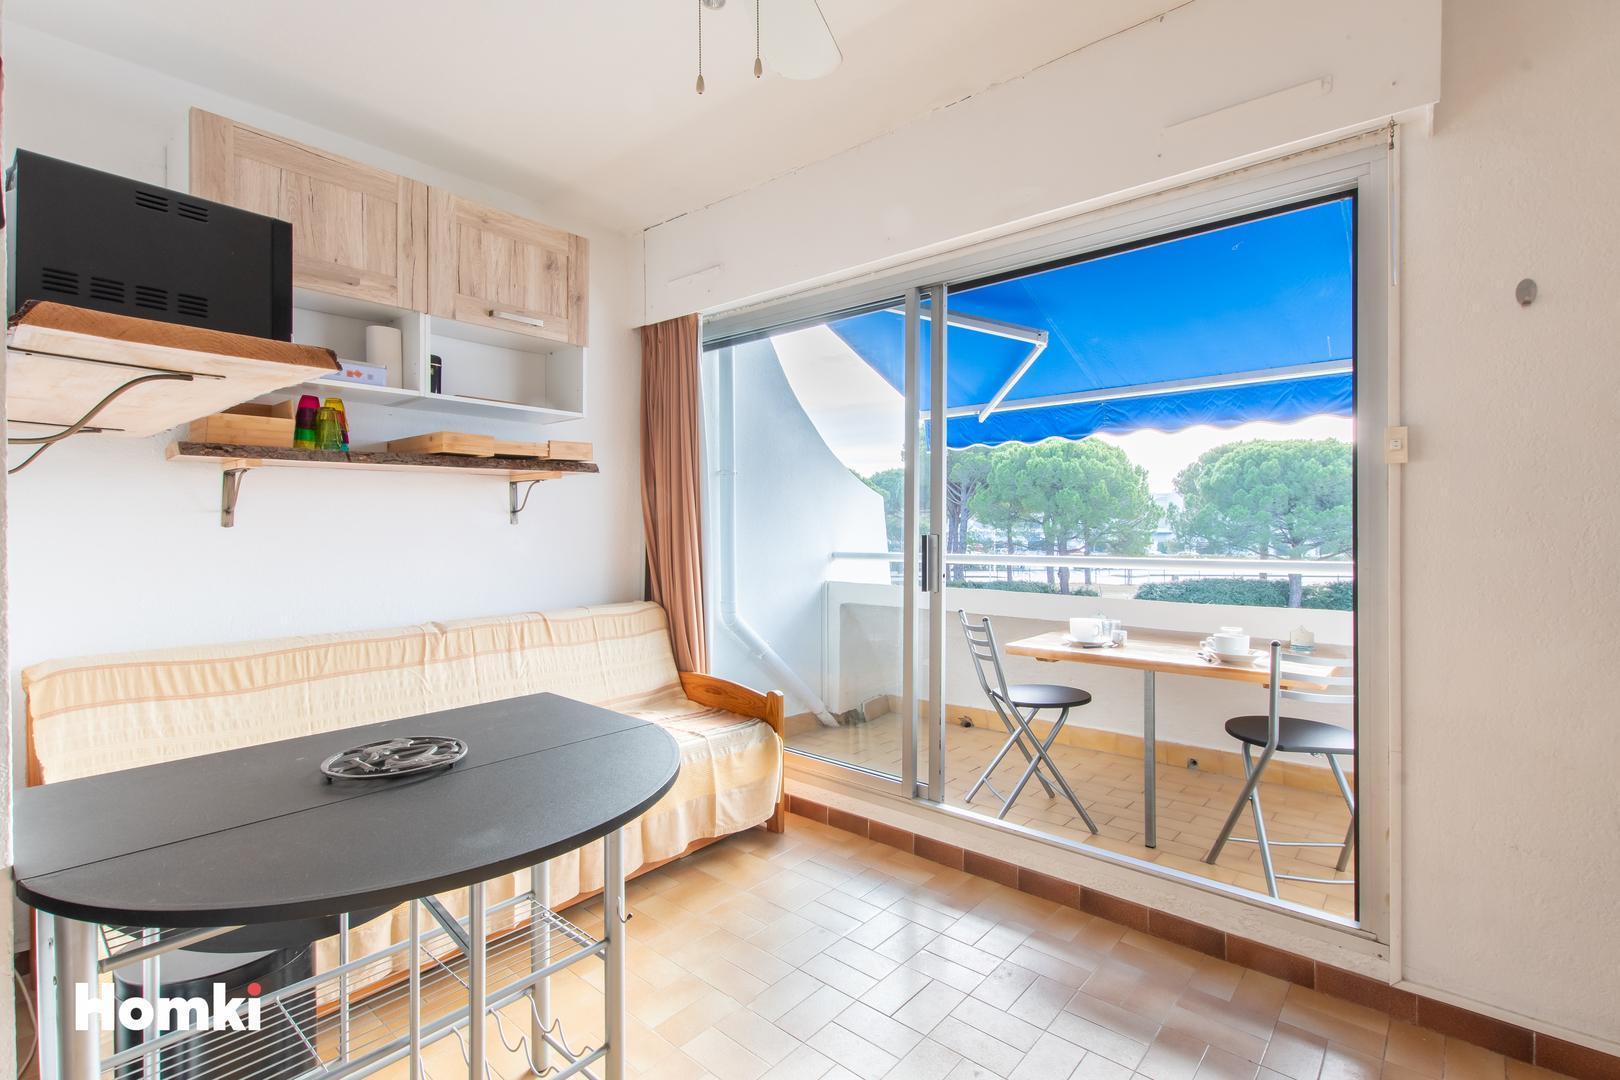 Homki - Vente Appartement  de 18.0 m² à Le Grau-du-Roi 30240